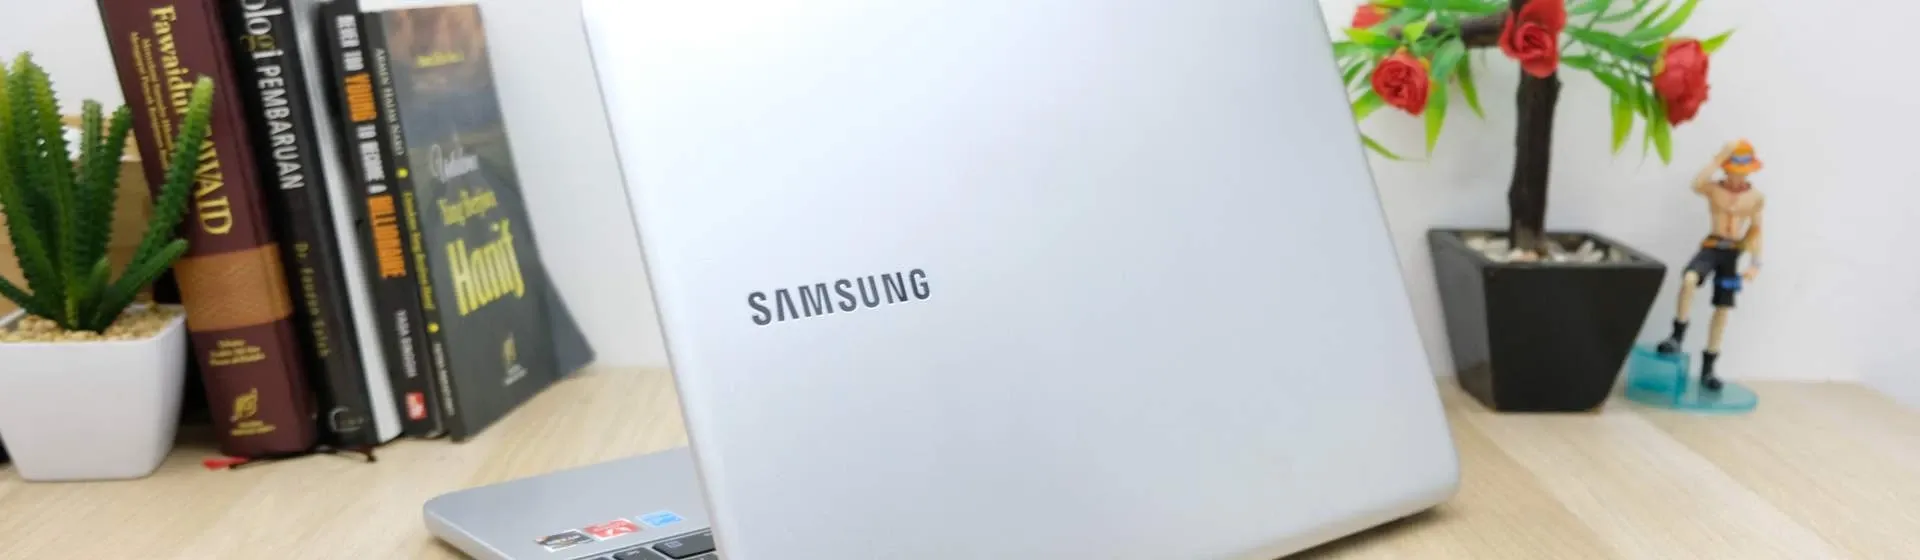 Melhor notebook Samsung barato: 7 modelos a partir de R$ 1.500